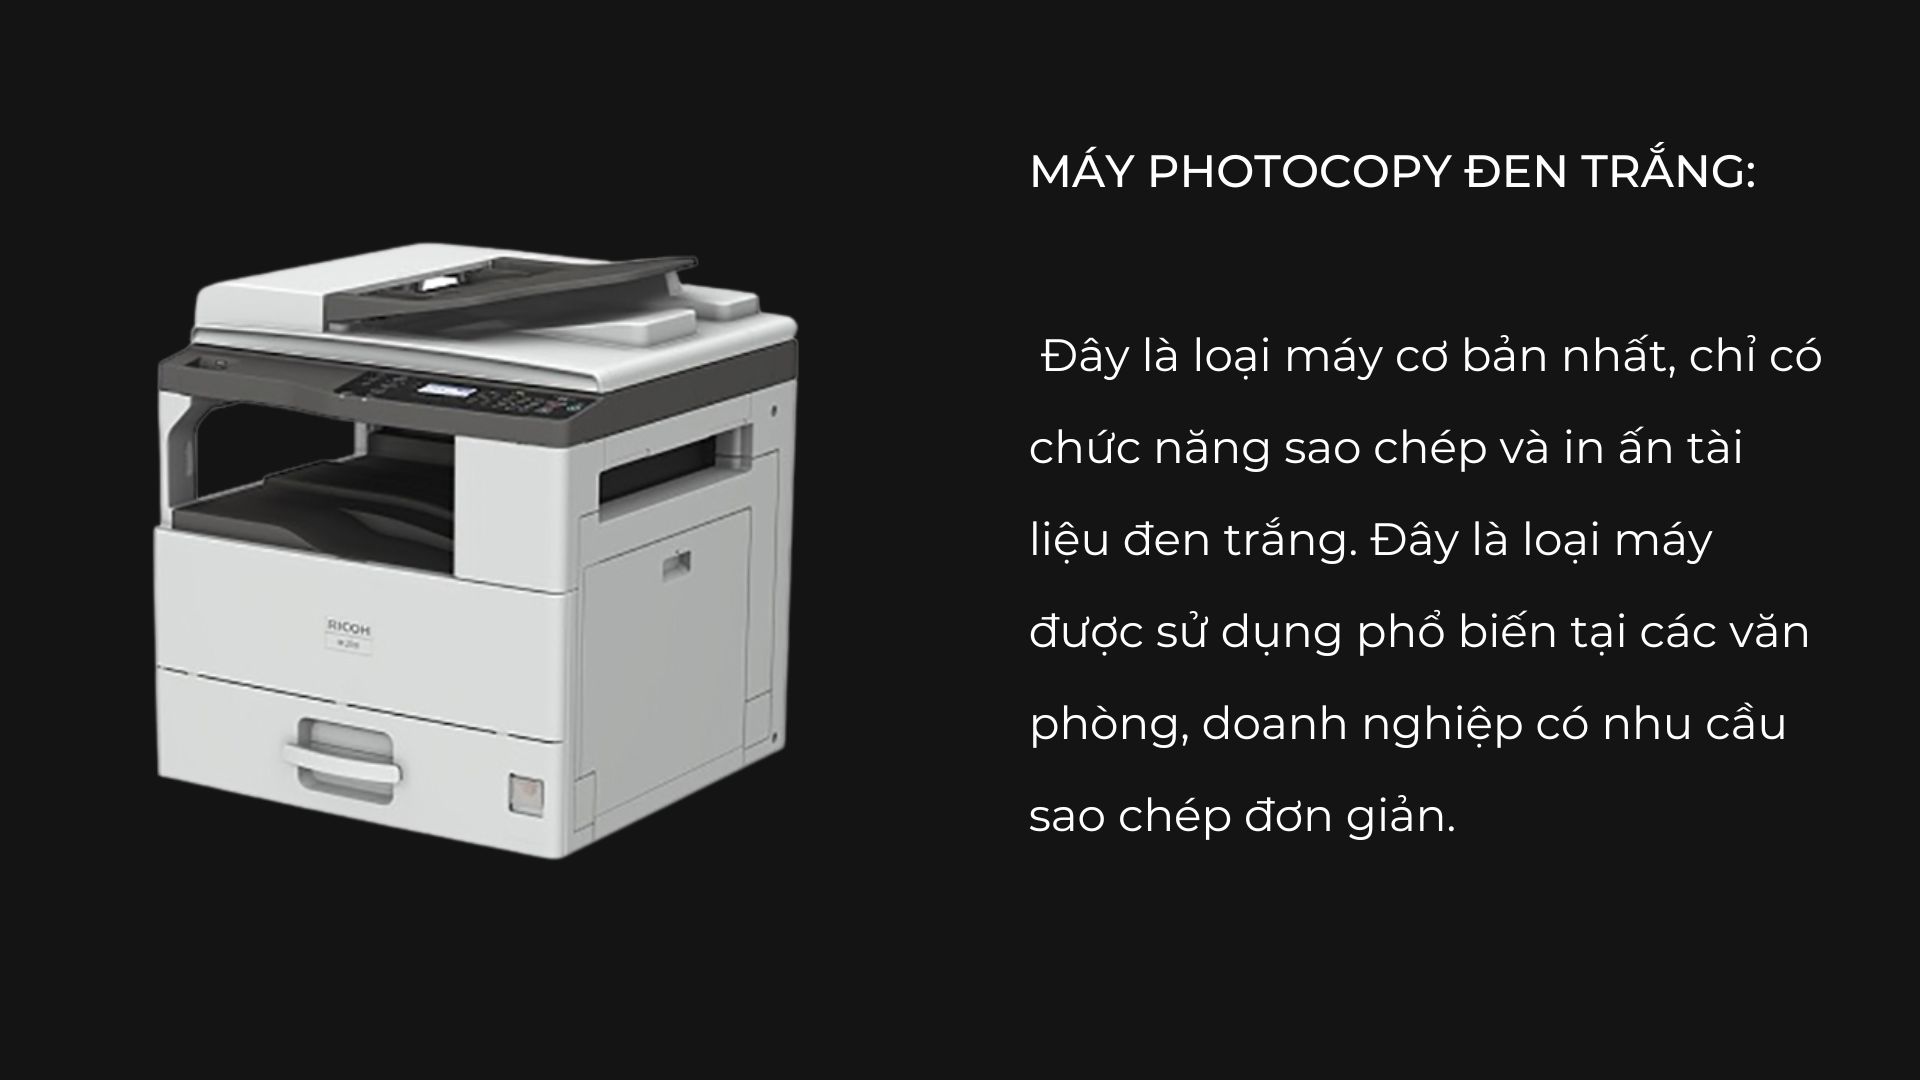 5-tieu-chi-lua-chon-may-photocopy-van-phong-cuc-chat-luong-03